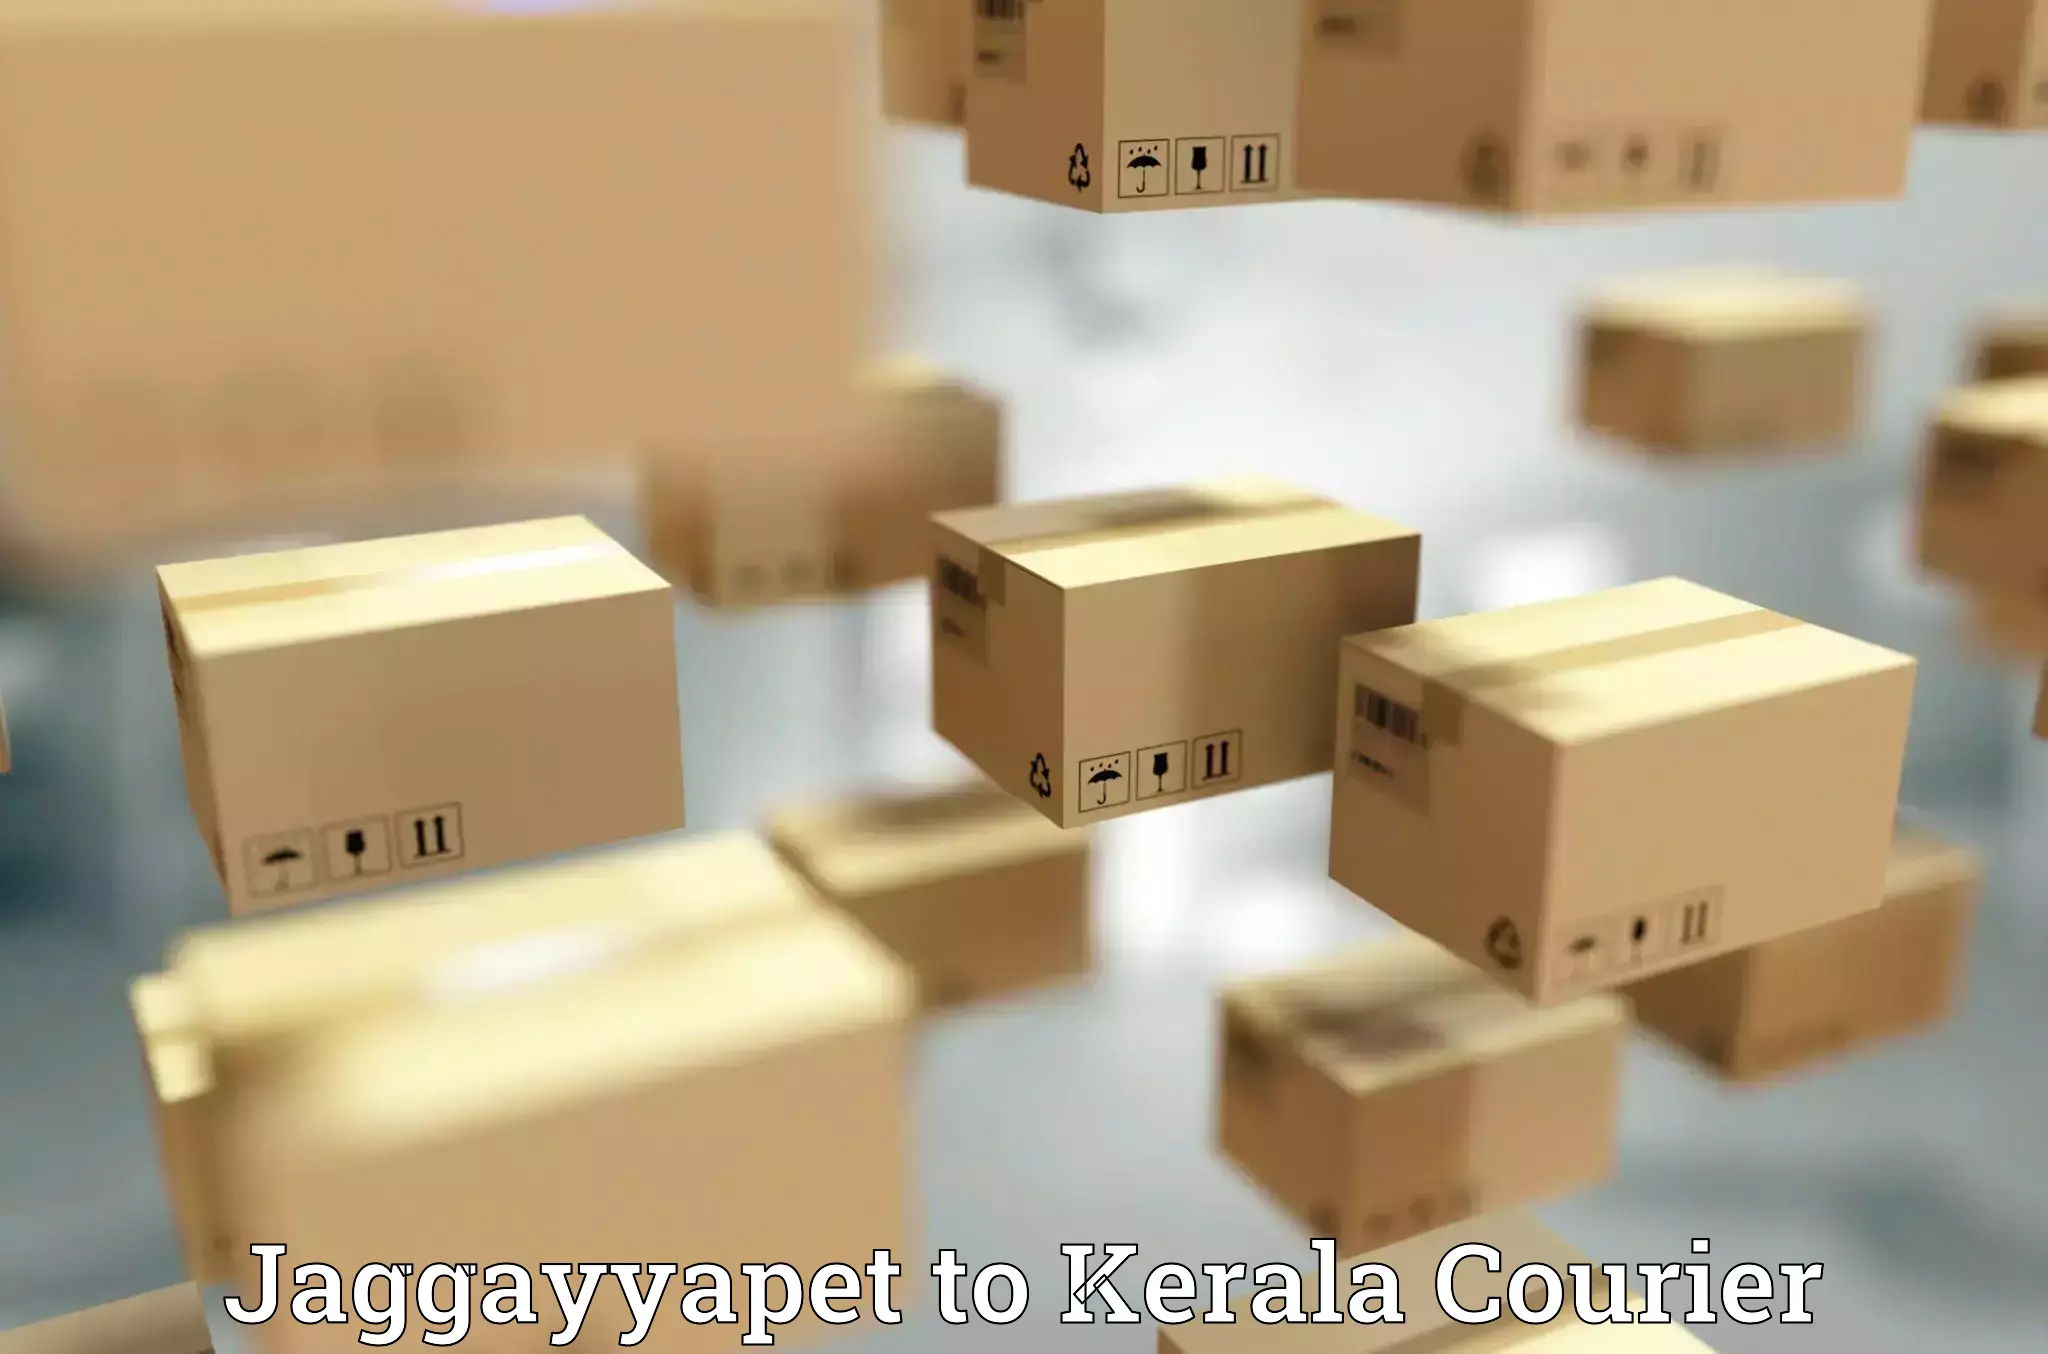 User-friendly delivery service Jaggayyapet to Karunagappally